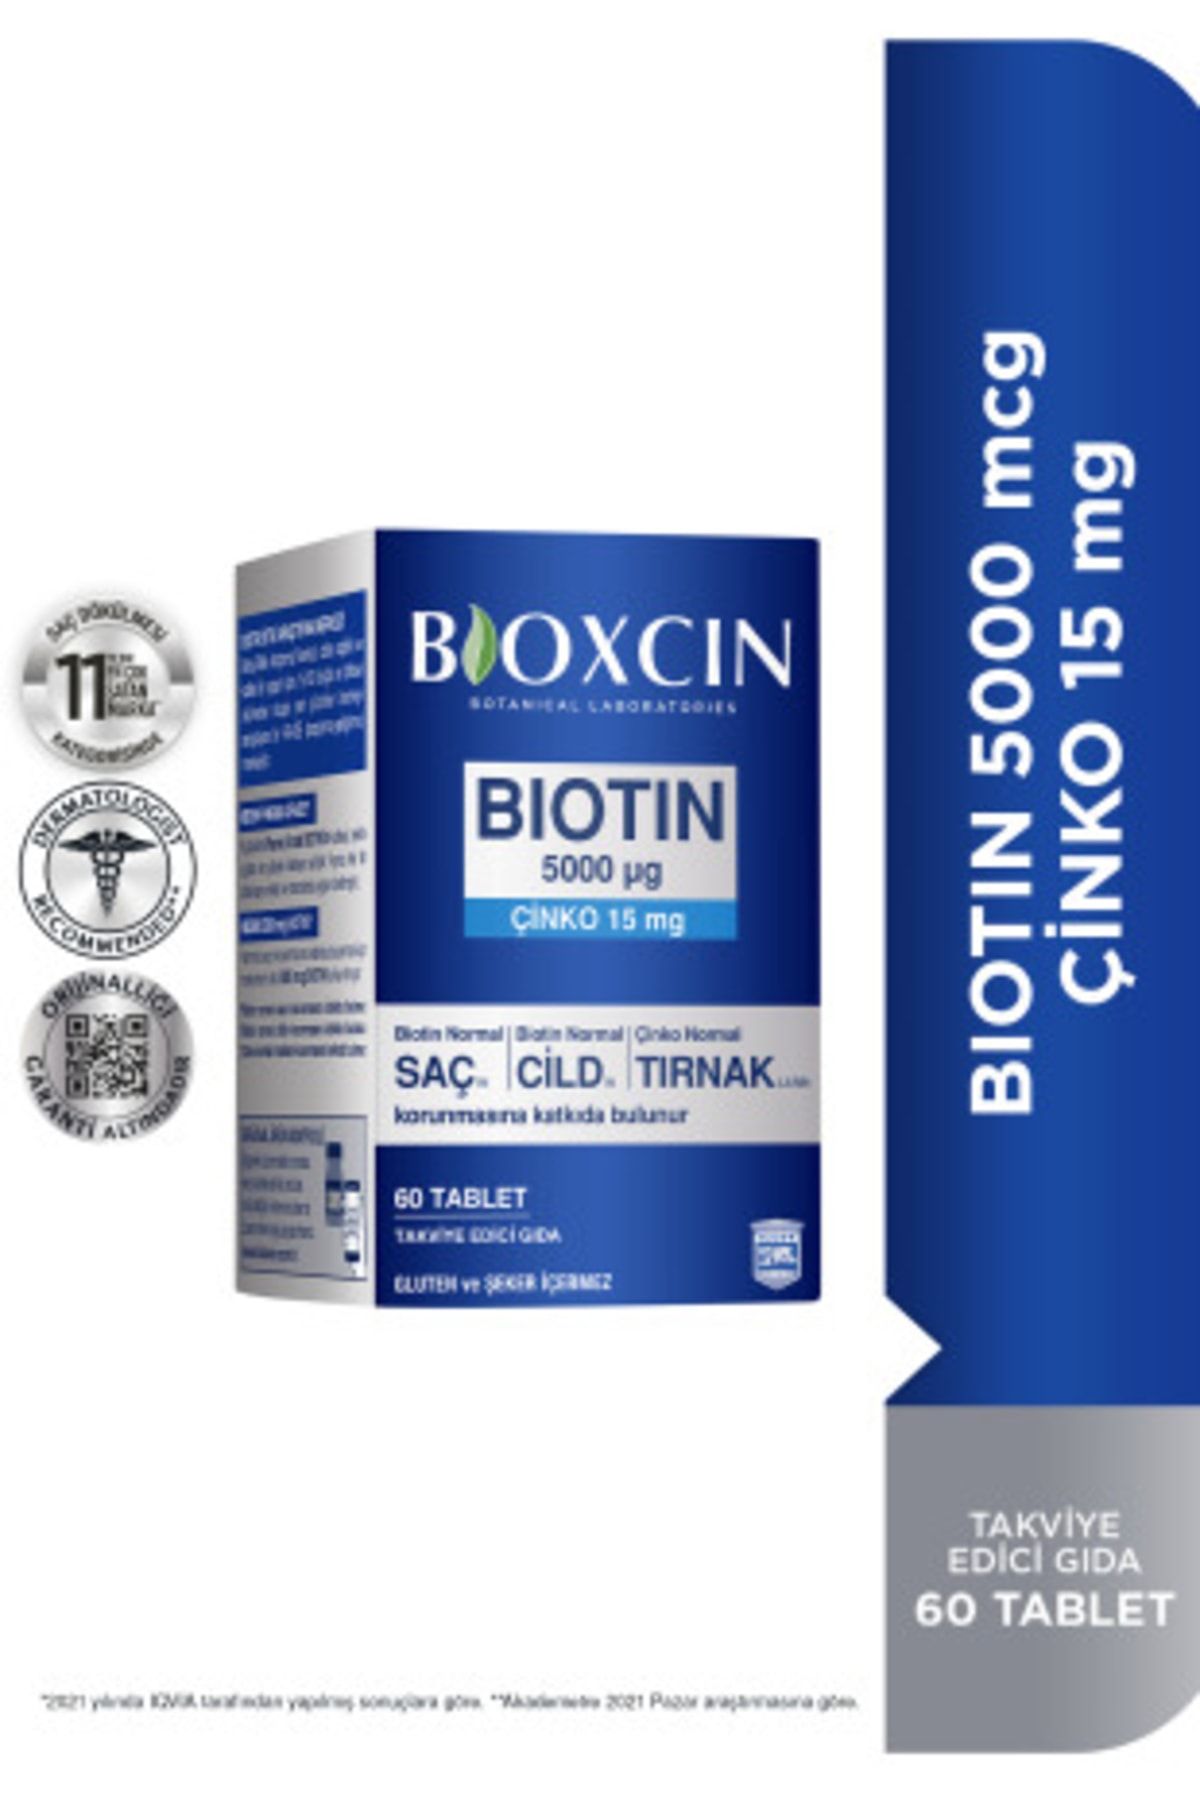 Bioxcin Biotin 5000 Mcg Takviye Edici Gıda 60 Tablet - Sağlıklı Saç, Cilt, Tırnak